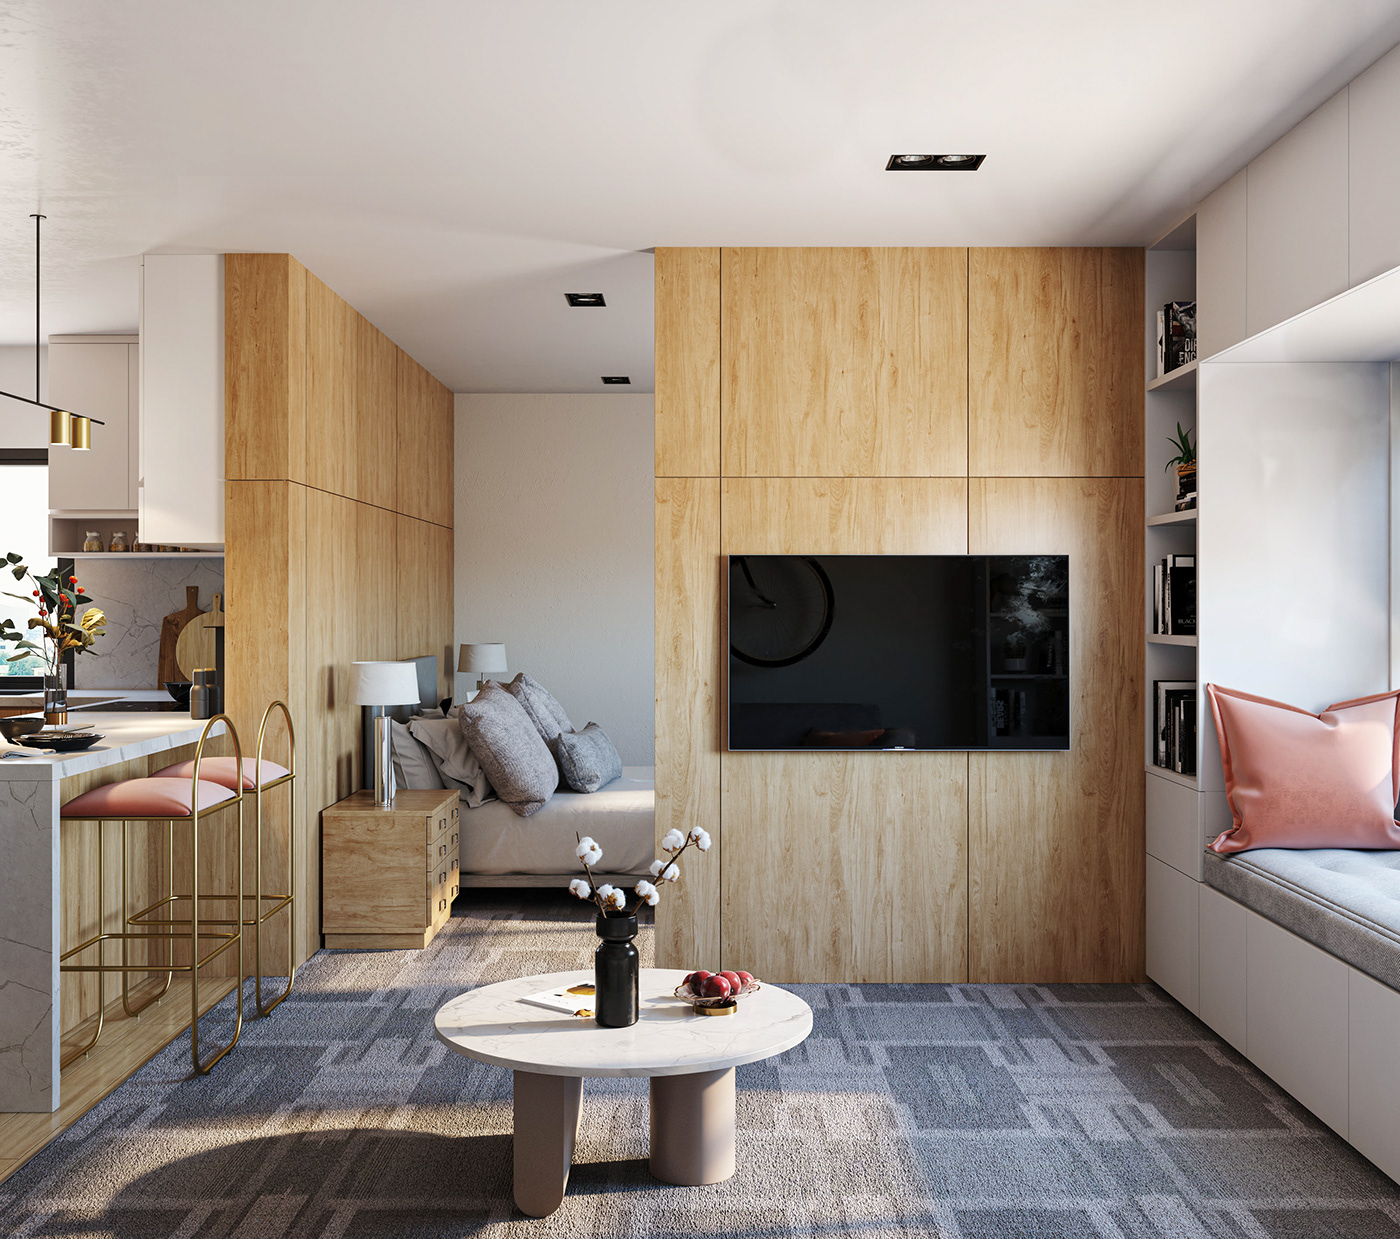 3dsmax apartment design architecture corona dubai Interior interior design  interiordesign visualization vray